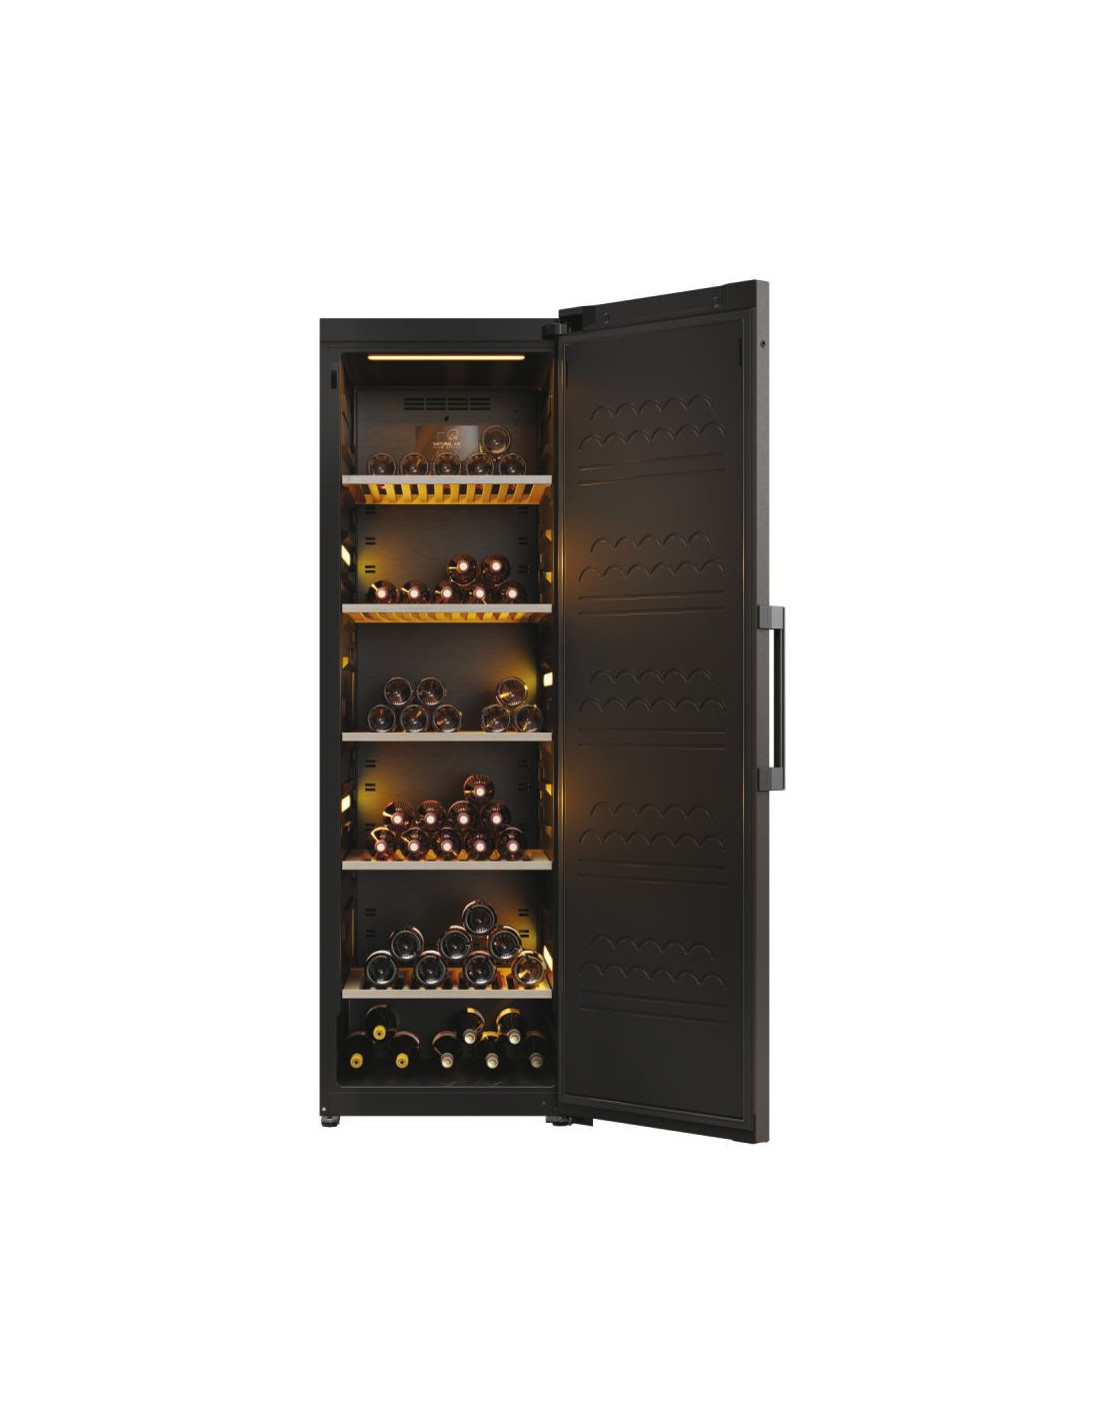 Haier Wine Bank 60 Serie 7 HWS247FDU1 Refroidisseur de vin compresseur  Autoportante Noir 247 bouteille(s)